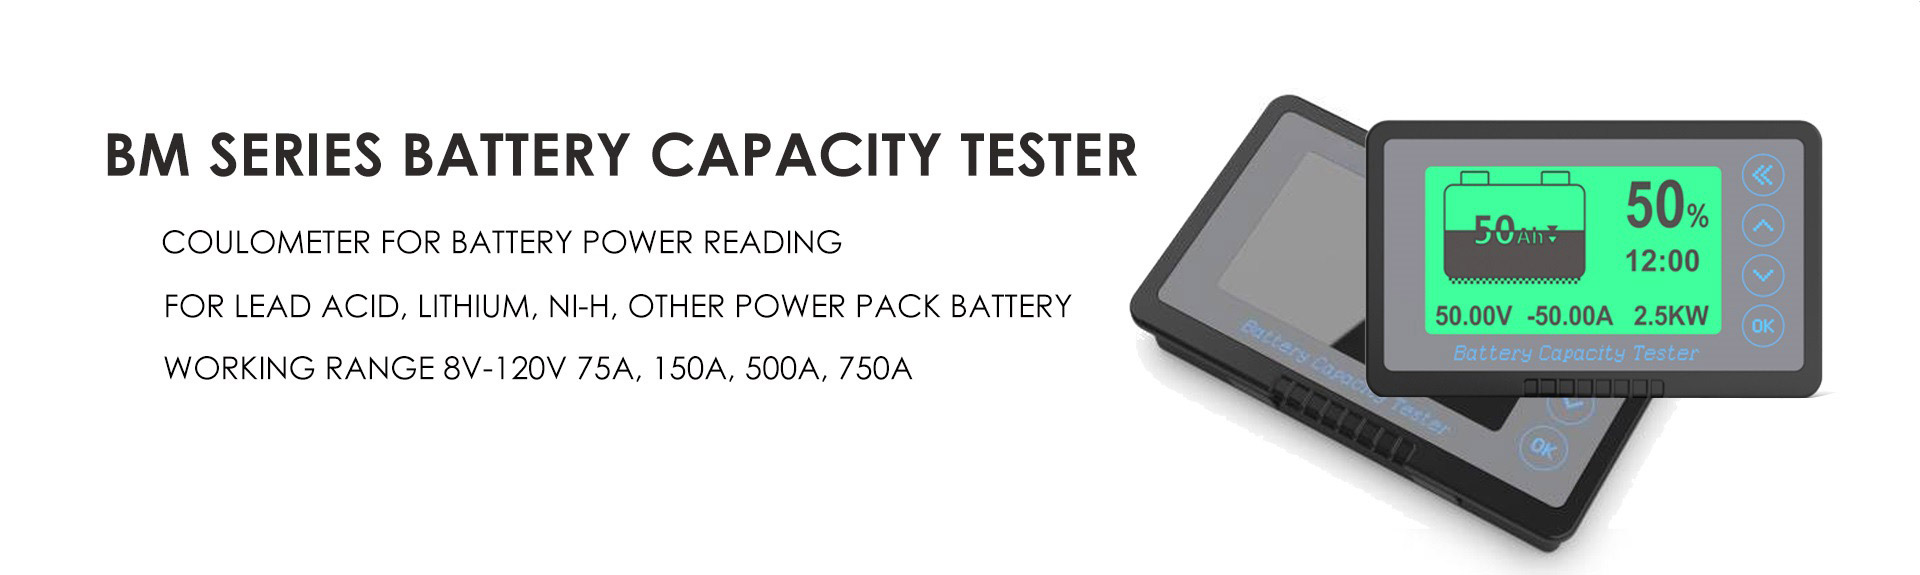 BM Series Battery Capacity Tester